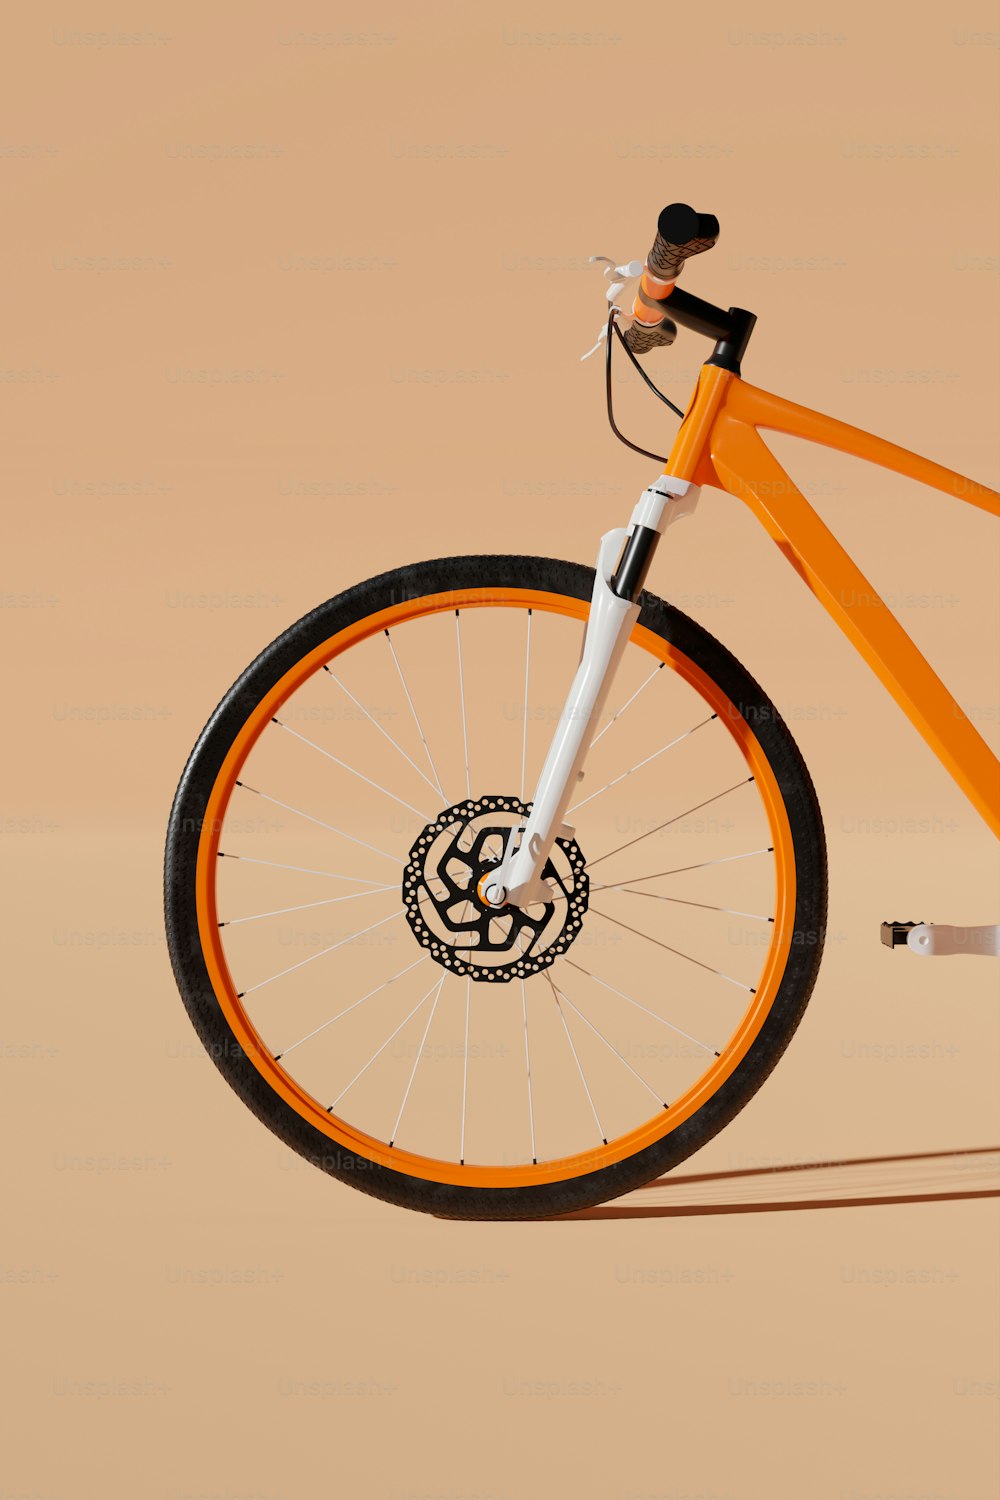 前輪に黒と白のエンブレムが付いたオレンジ色の自転車